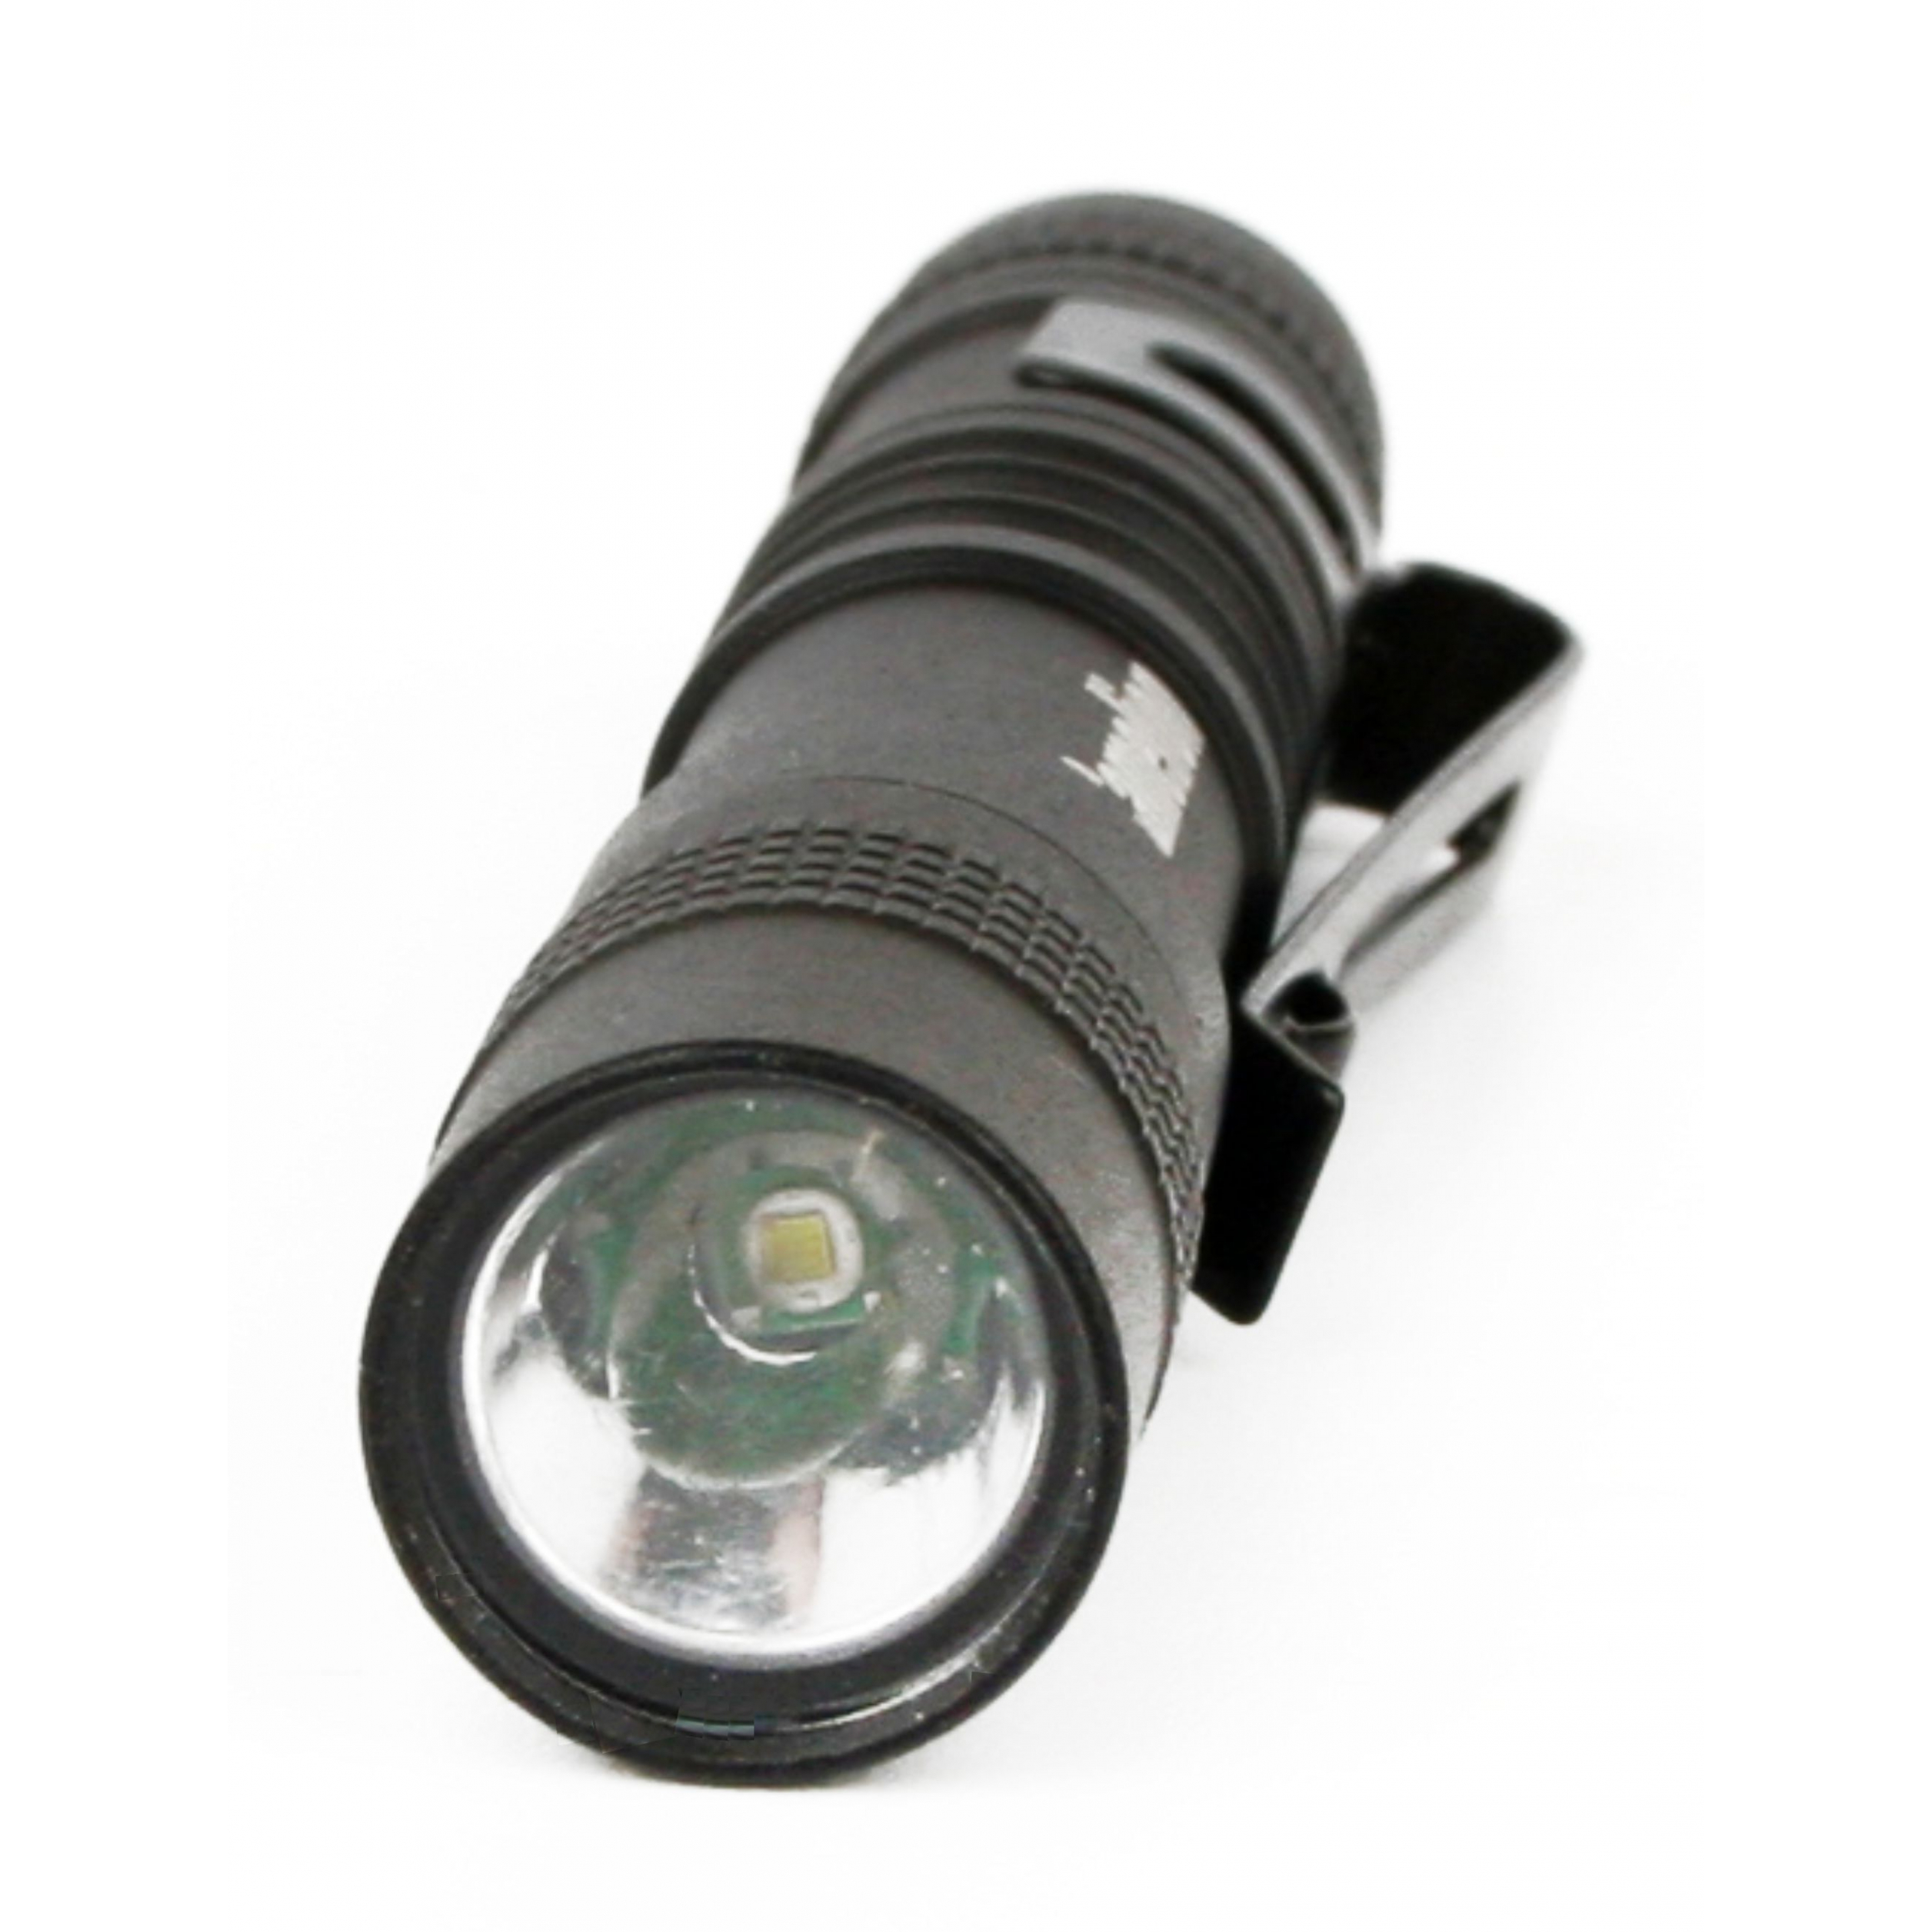 Camelion LED51516 (фонарь, черн, LED XPE, 3 реж 1XLR03 в компл., алюм., откр. блистер)